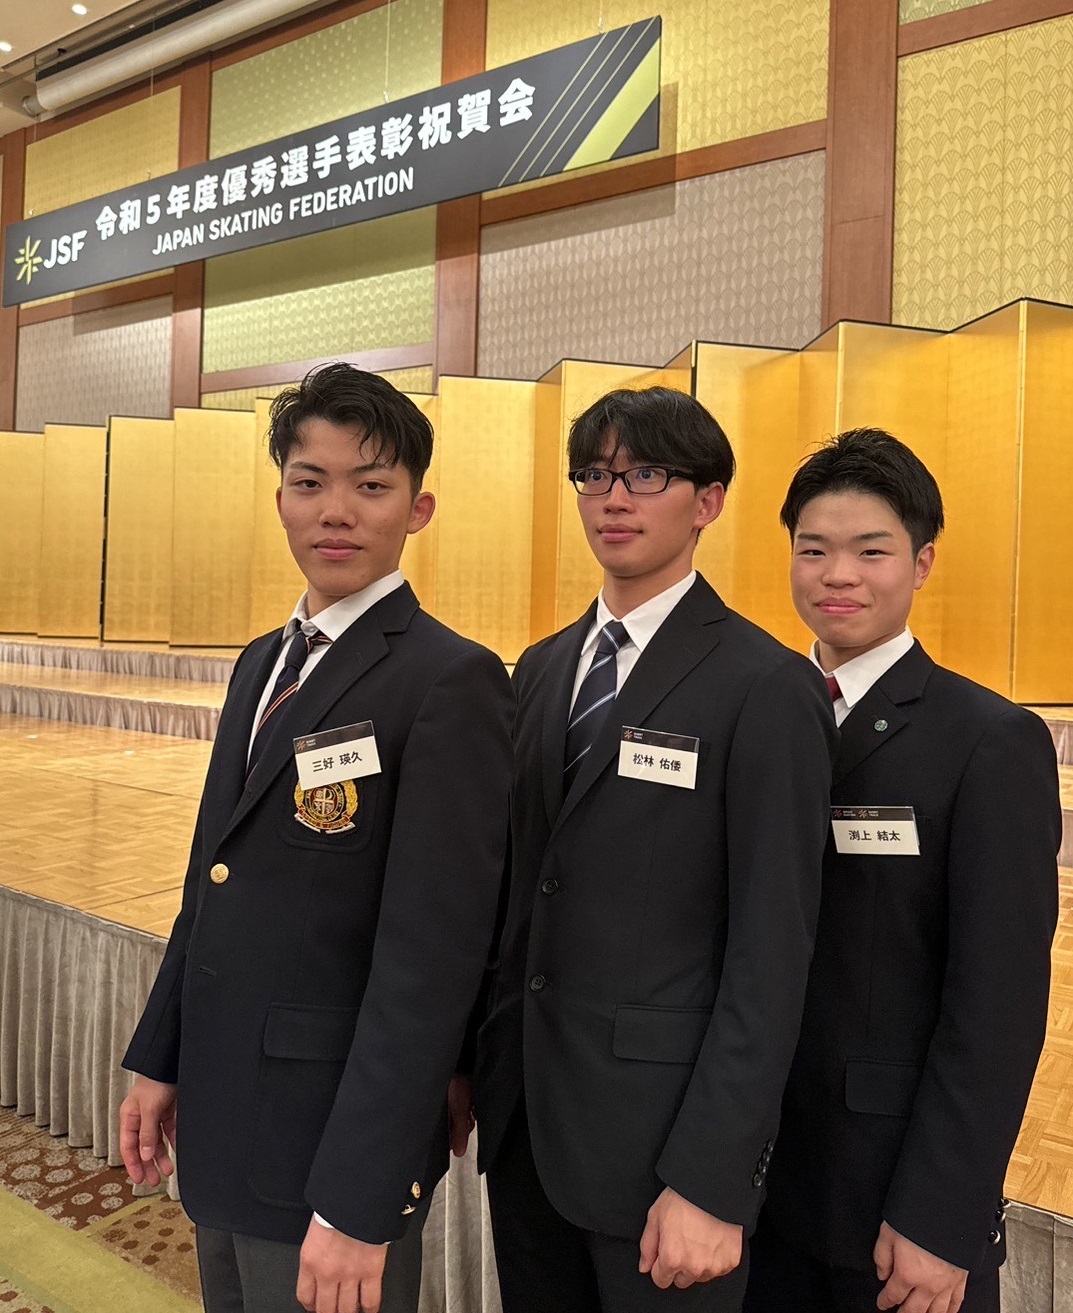 氷上競技部 松林佑倭選手が、「令和5年度優秀選手章」を受賞しました。